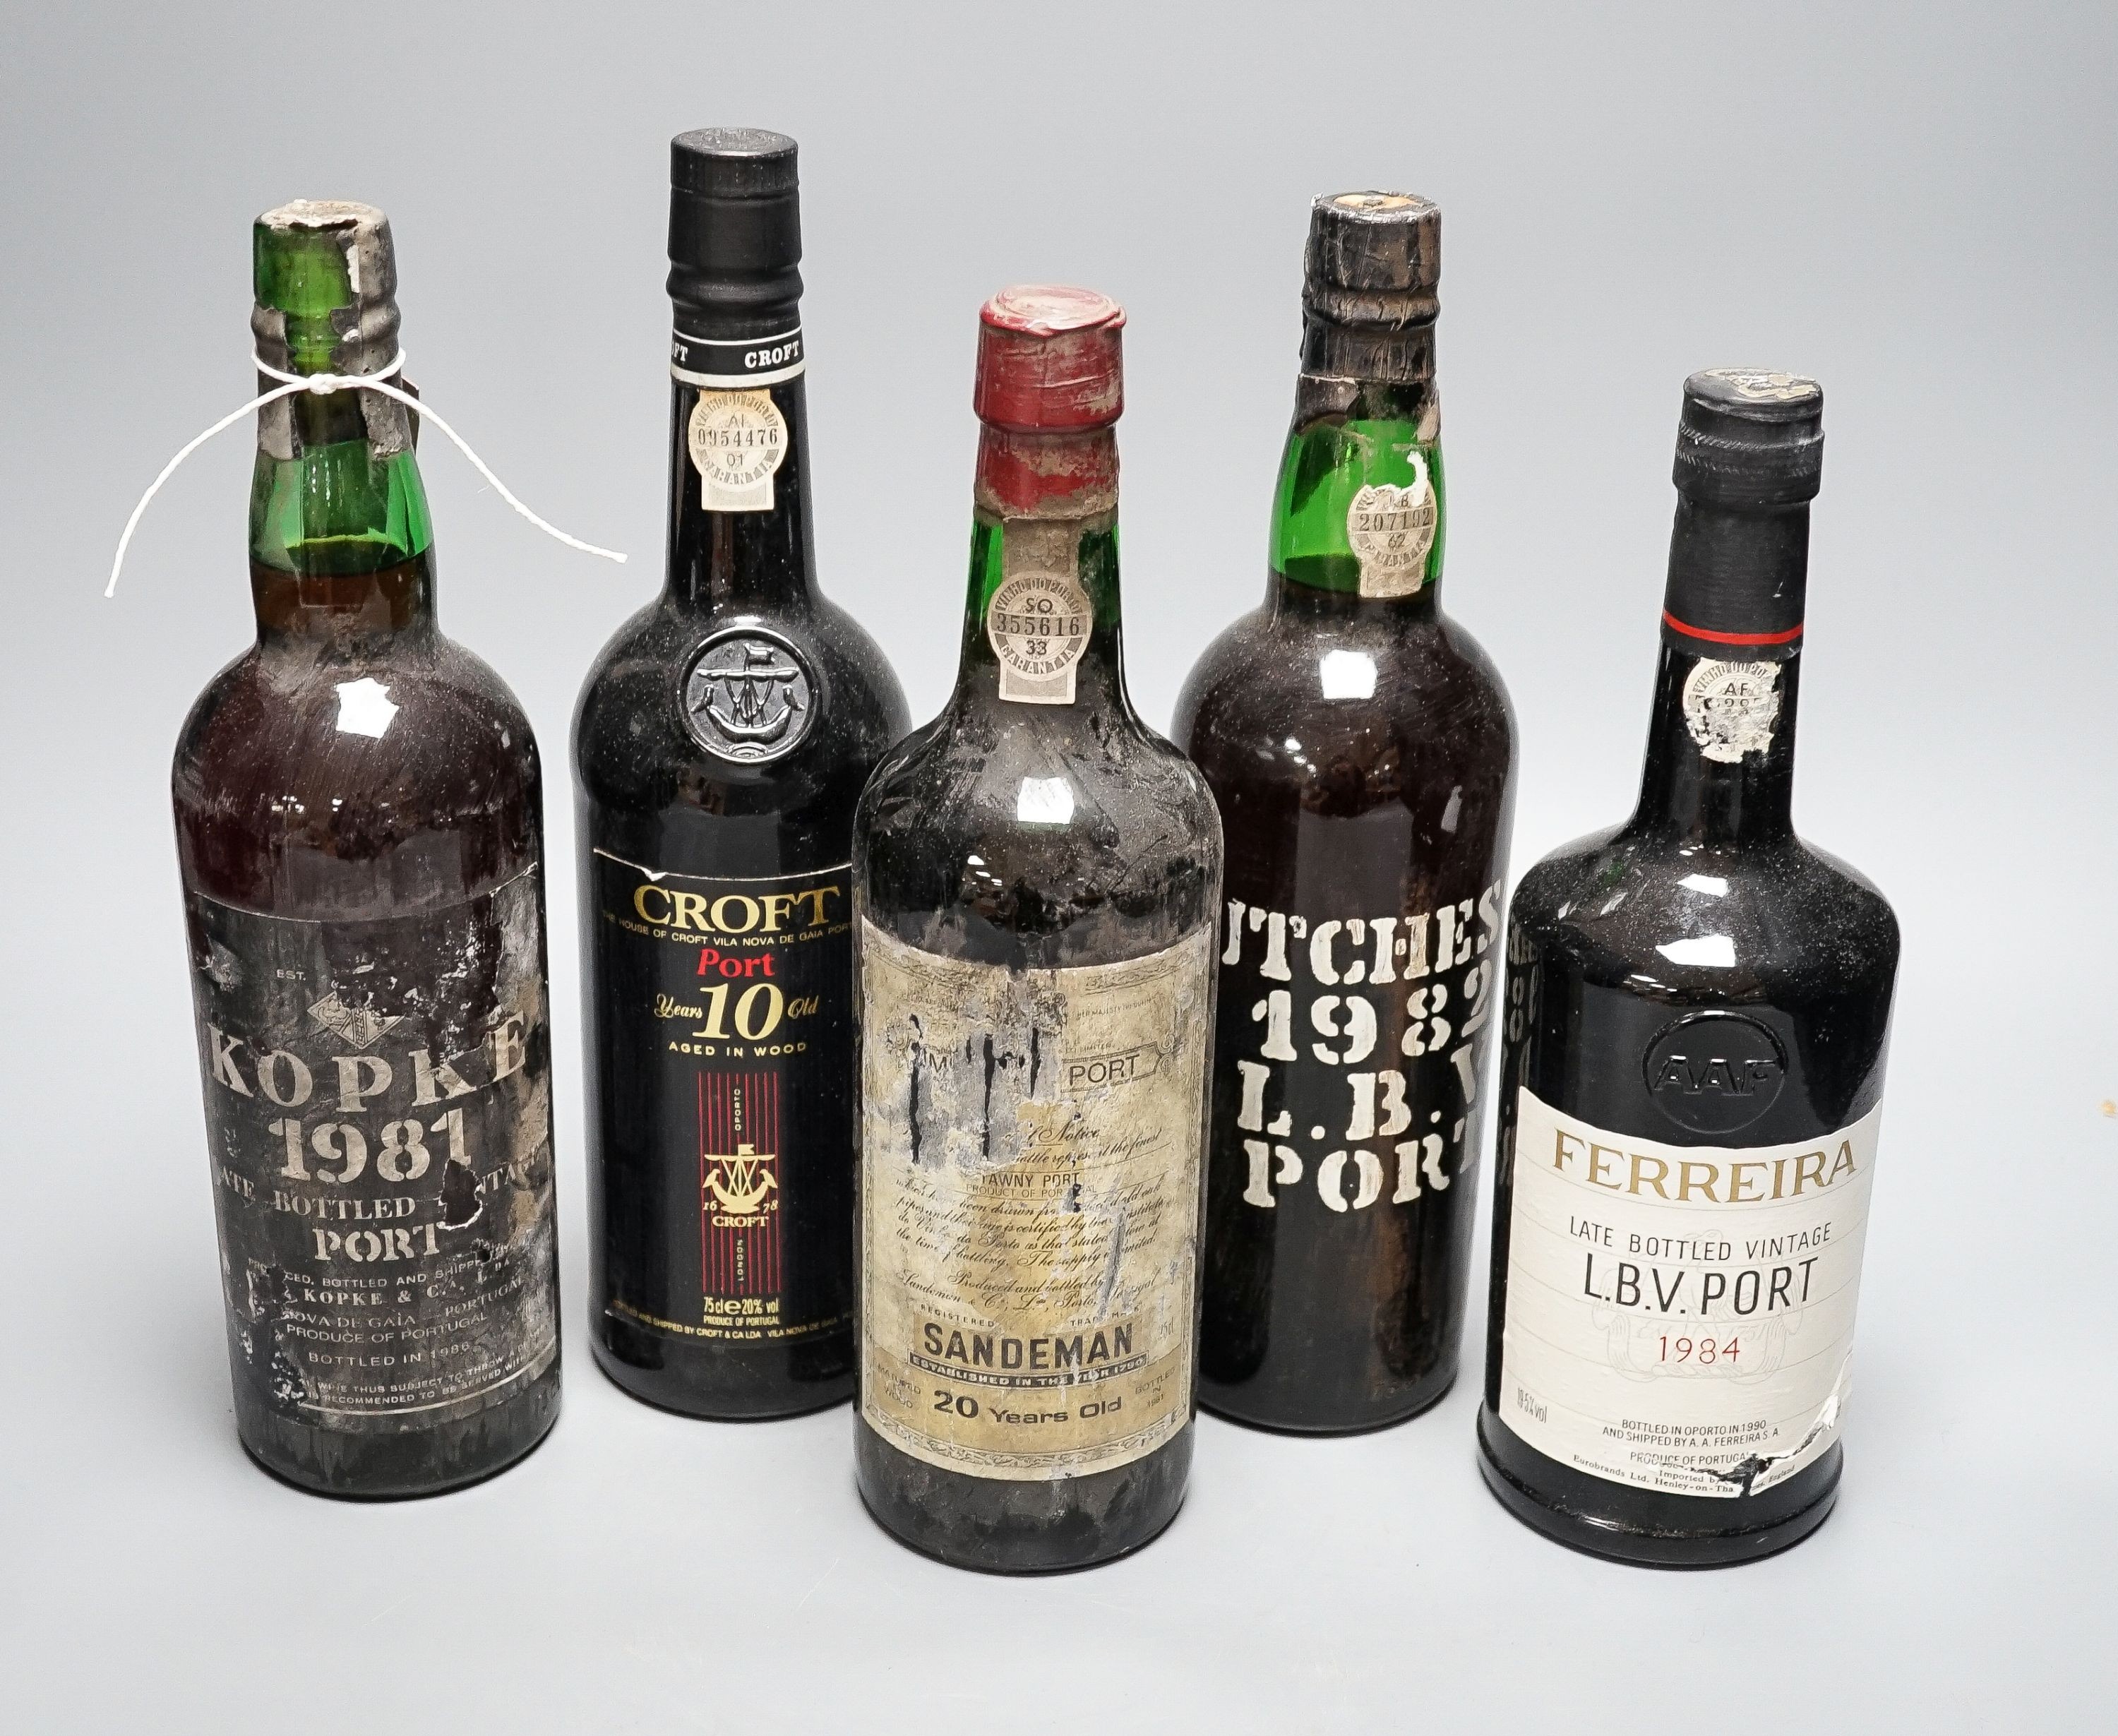 Five bottles - Kopke LBV (bottled 1986), Hutcheson LBV (bottled 1988), Feirraira LBV (bottled 1990), Croft 10 year old Tawny (bottled 1990) and Sandeman 20 year old Tawny Port (bottled 1981), all 75cl.